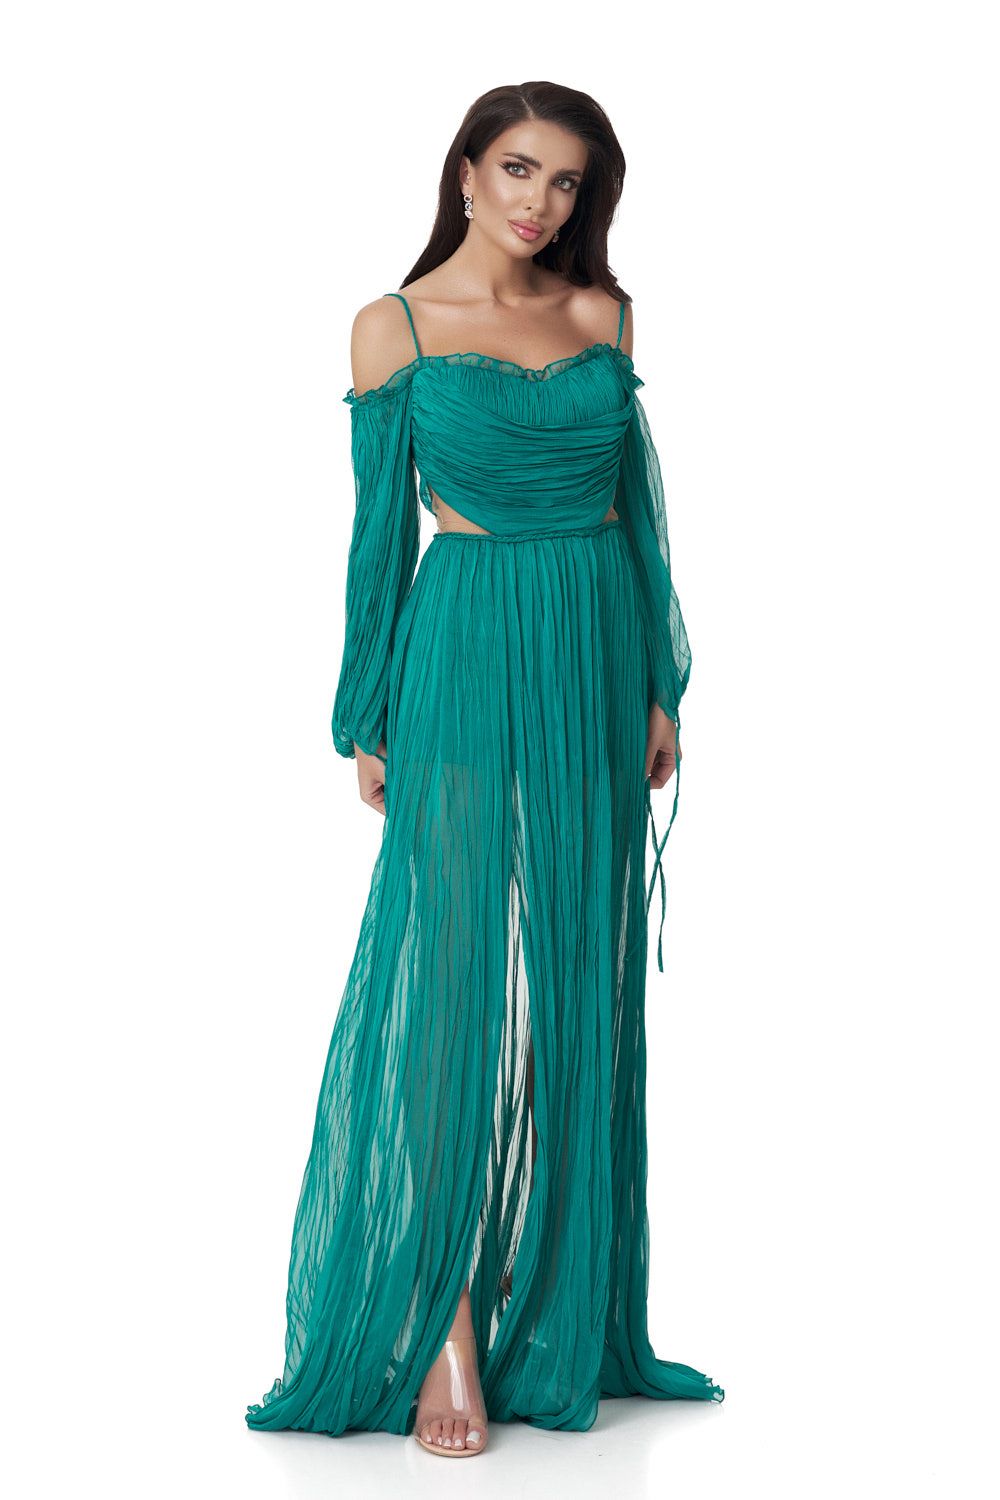 Ekanta Bogas hosszú zöld selyem női ruha